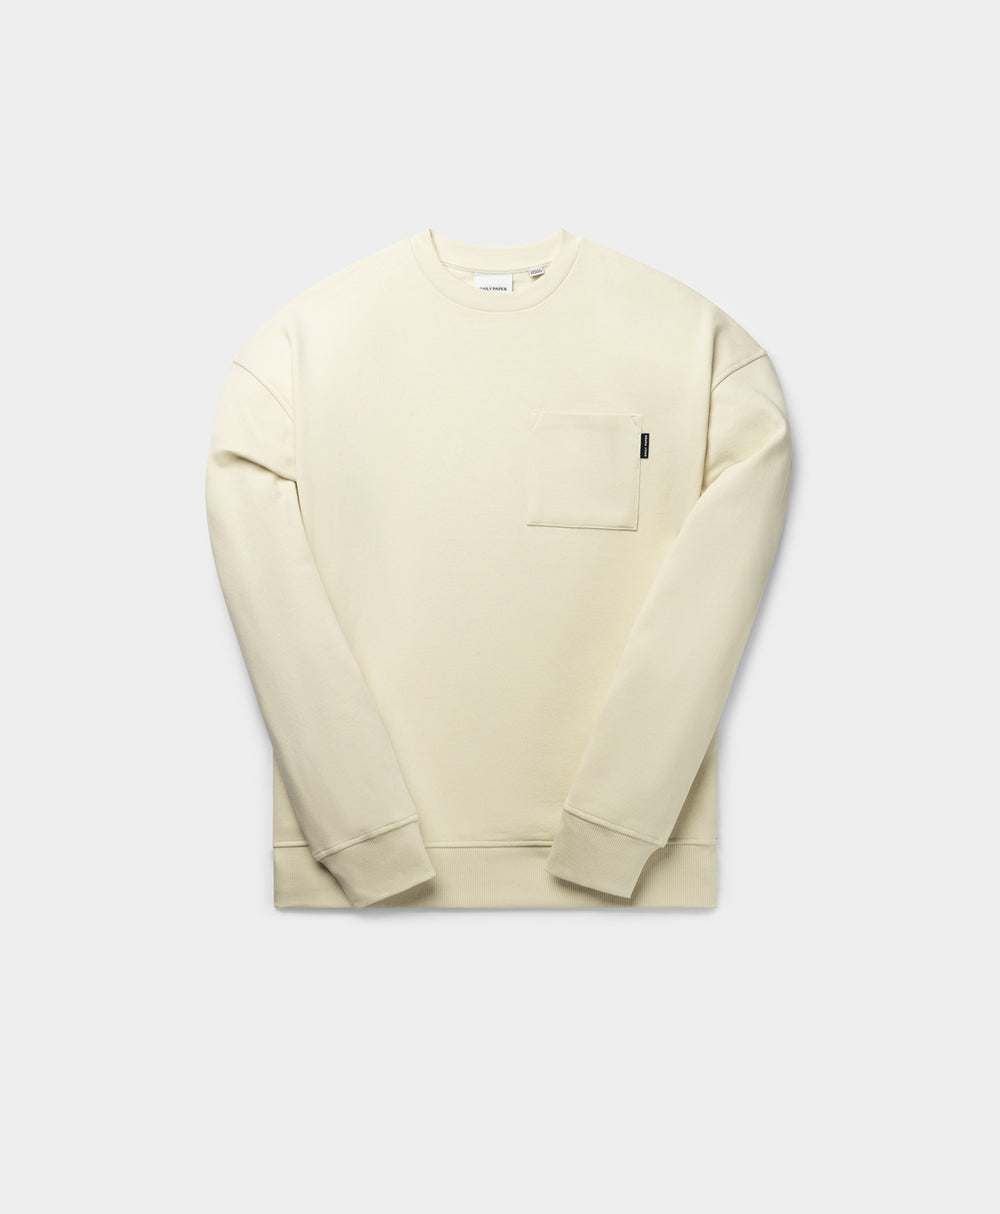 DP - Birch White Enjata Sweater - Packshot - Front